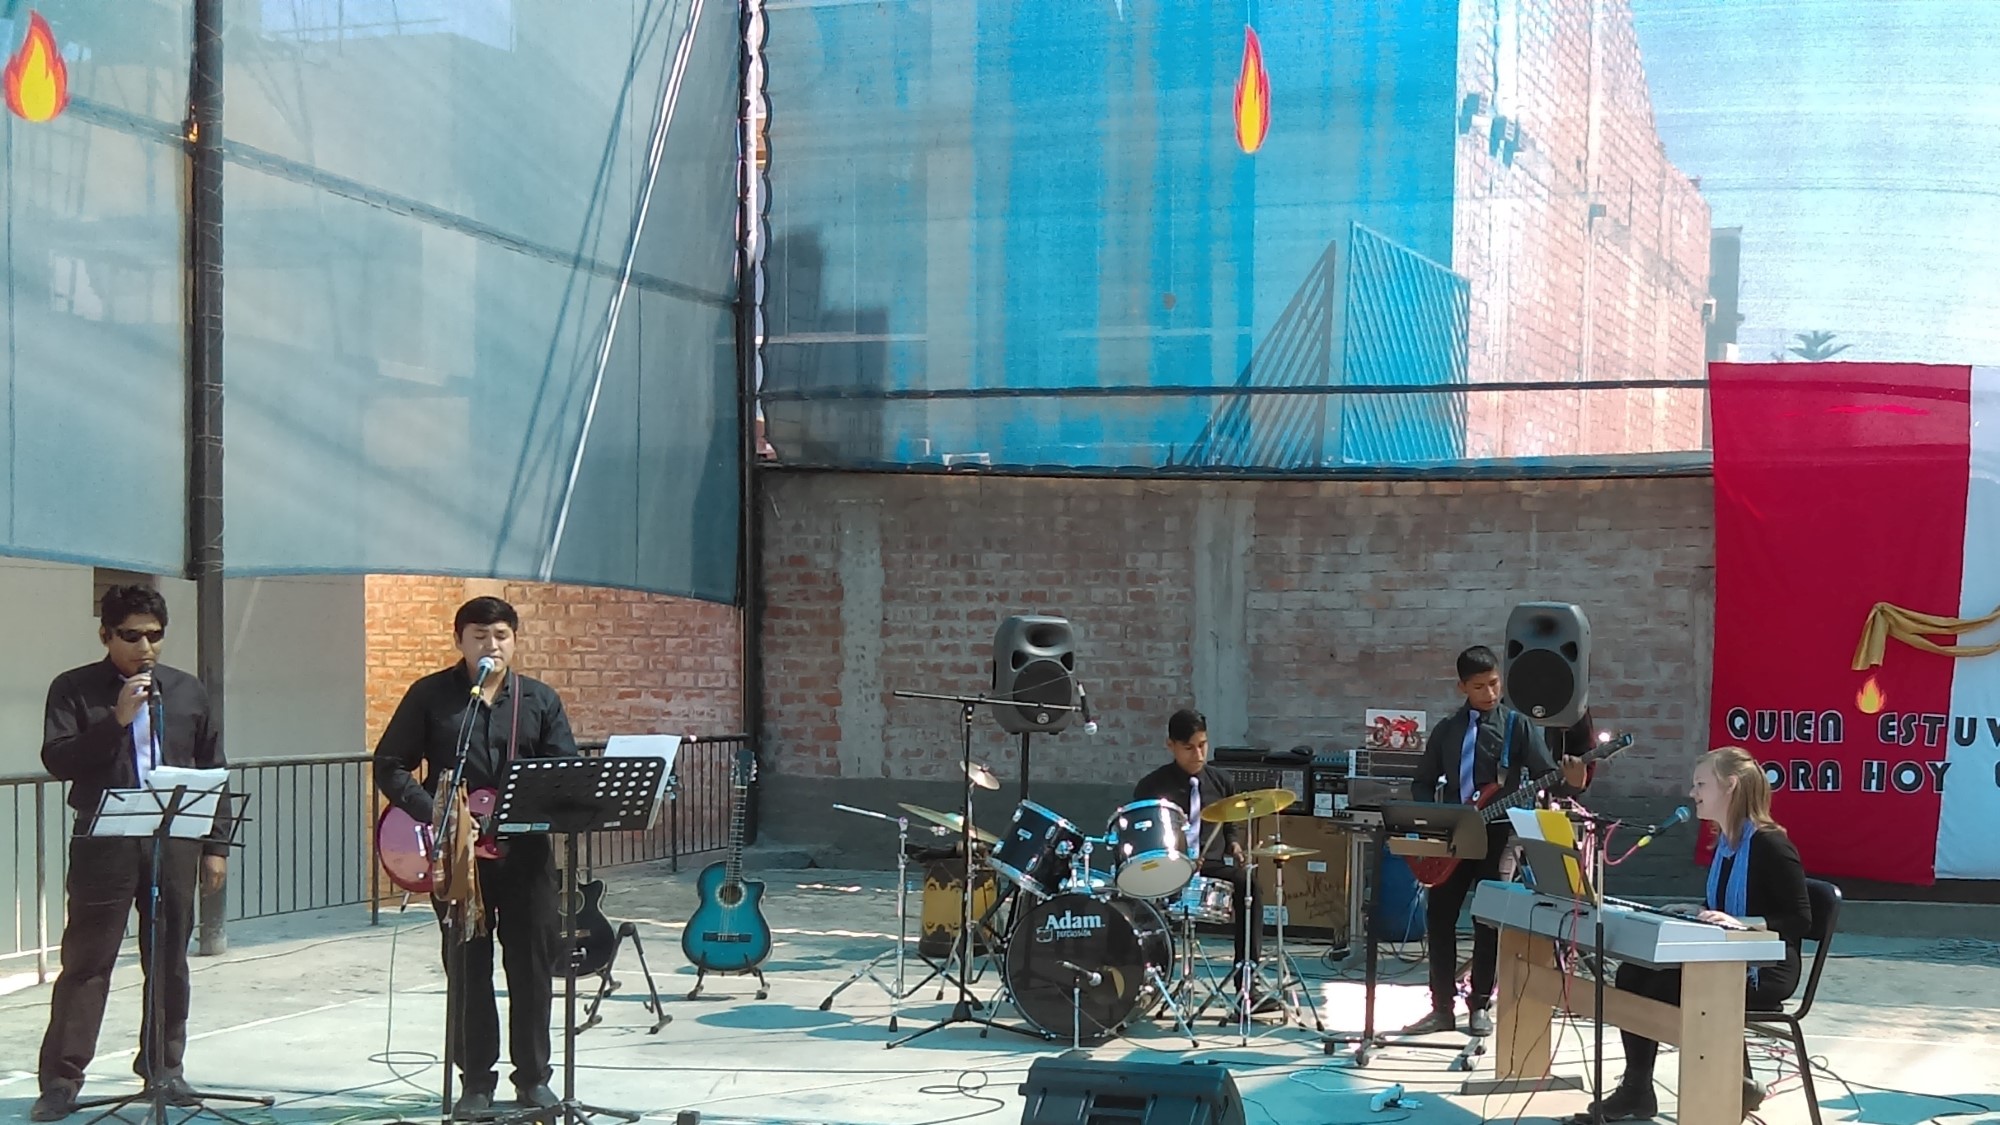 Fire musikere spiller musikk på en åpen plass i Arequipa